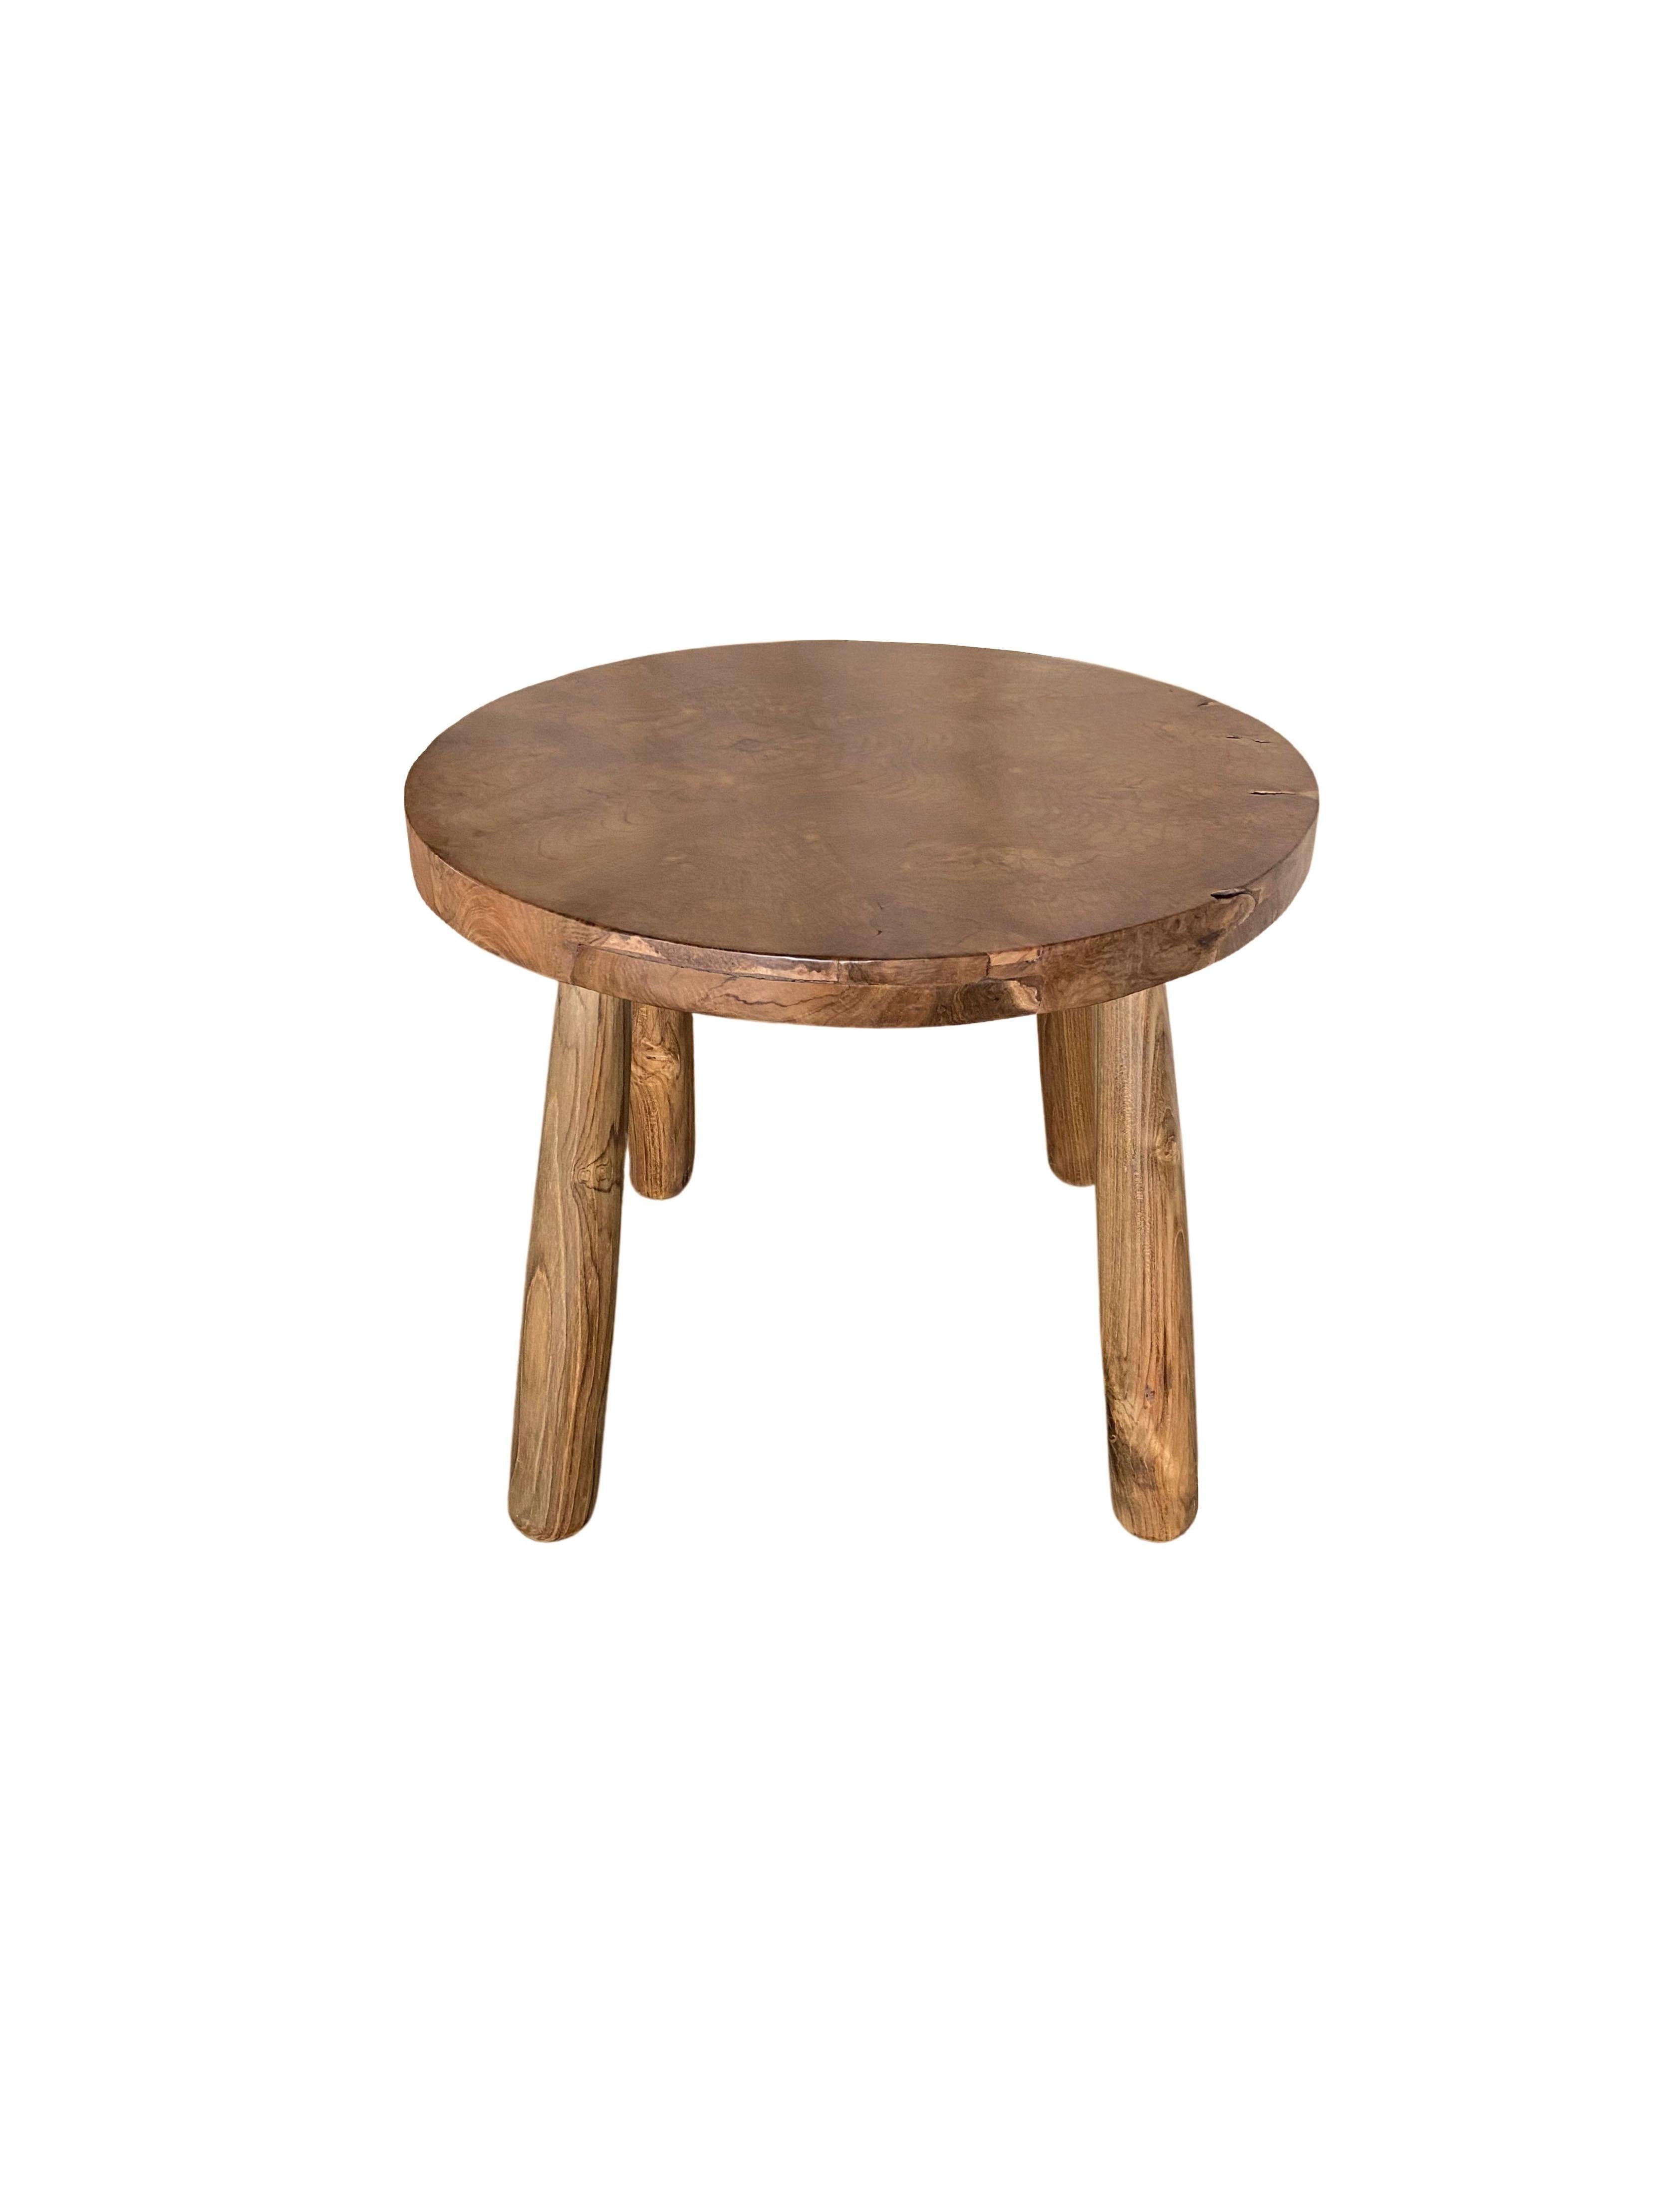 Set of Sculptural Teak Burl Wood Side Tables For Sale 1